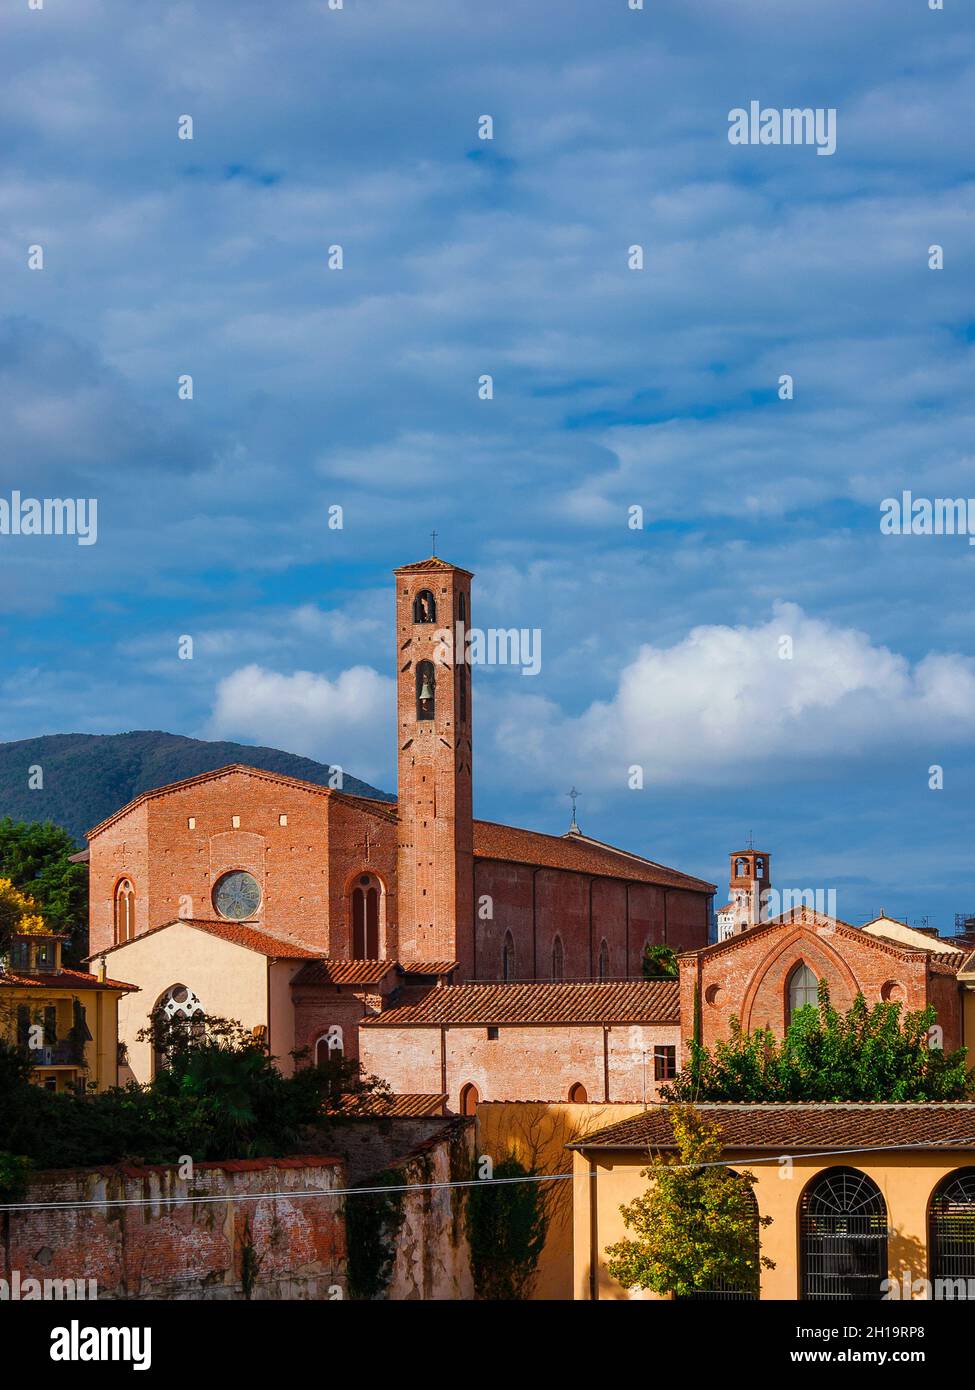 Lucca Charmantes historisches Zentrum. Blick auf die alte Skyline der Stadt mit mittelalterlichen Türmen und der gotischen St. Francis-Kirche Stockfoto